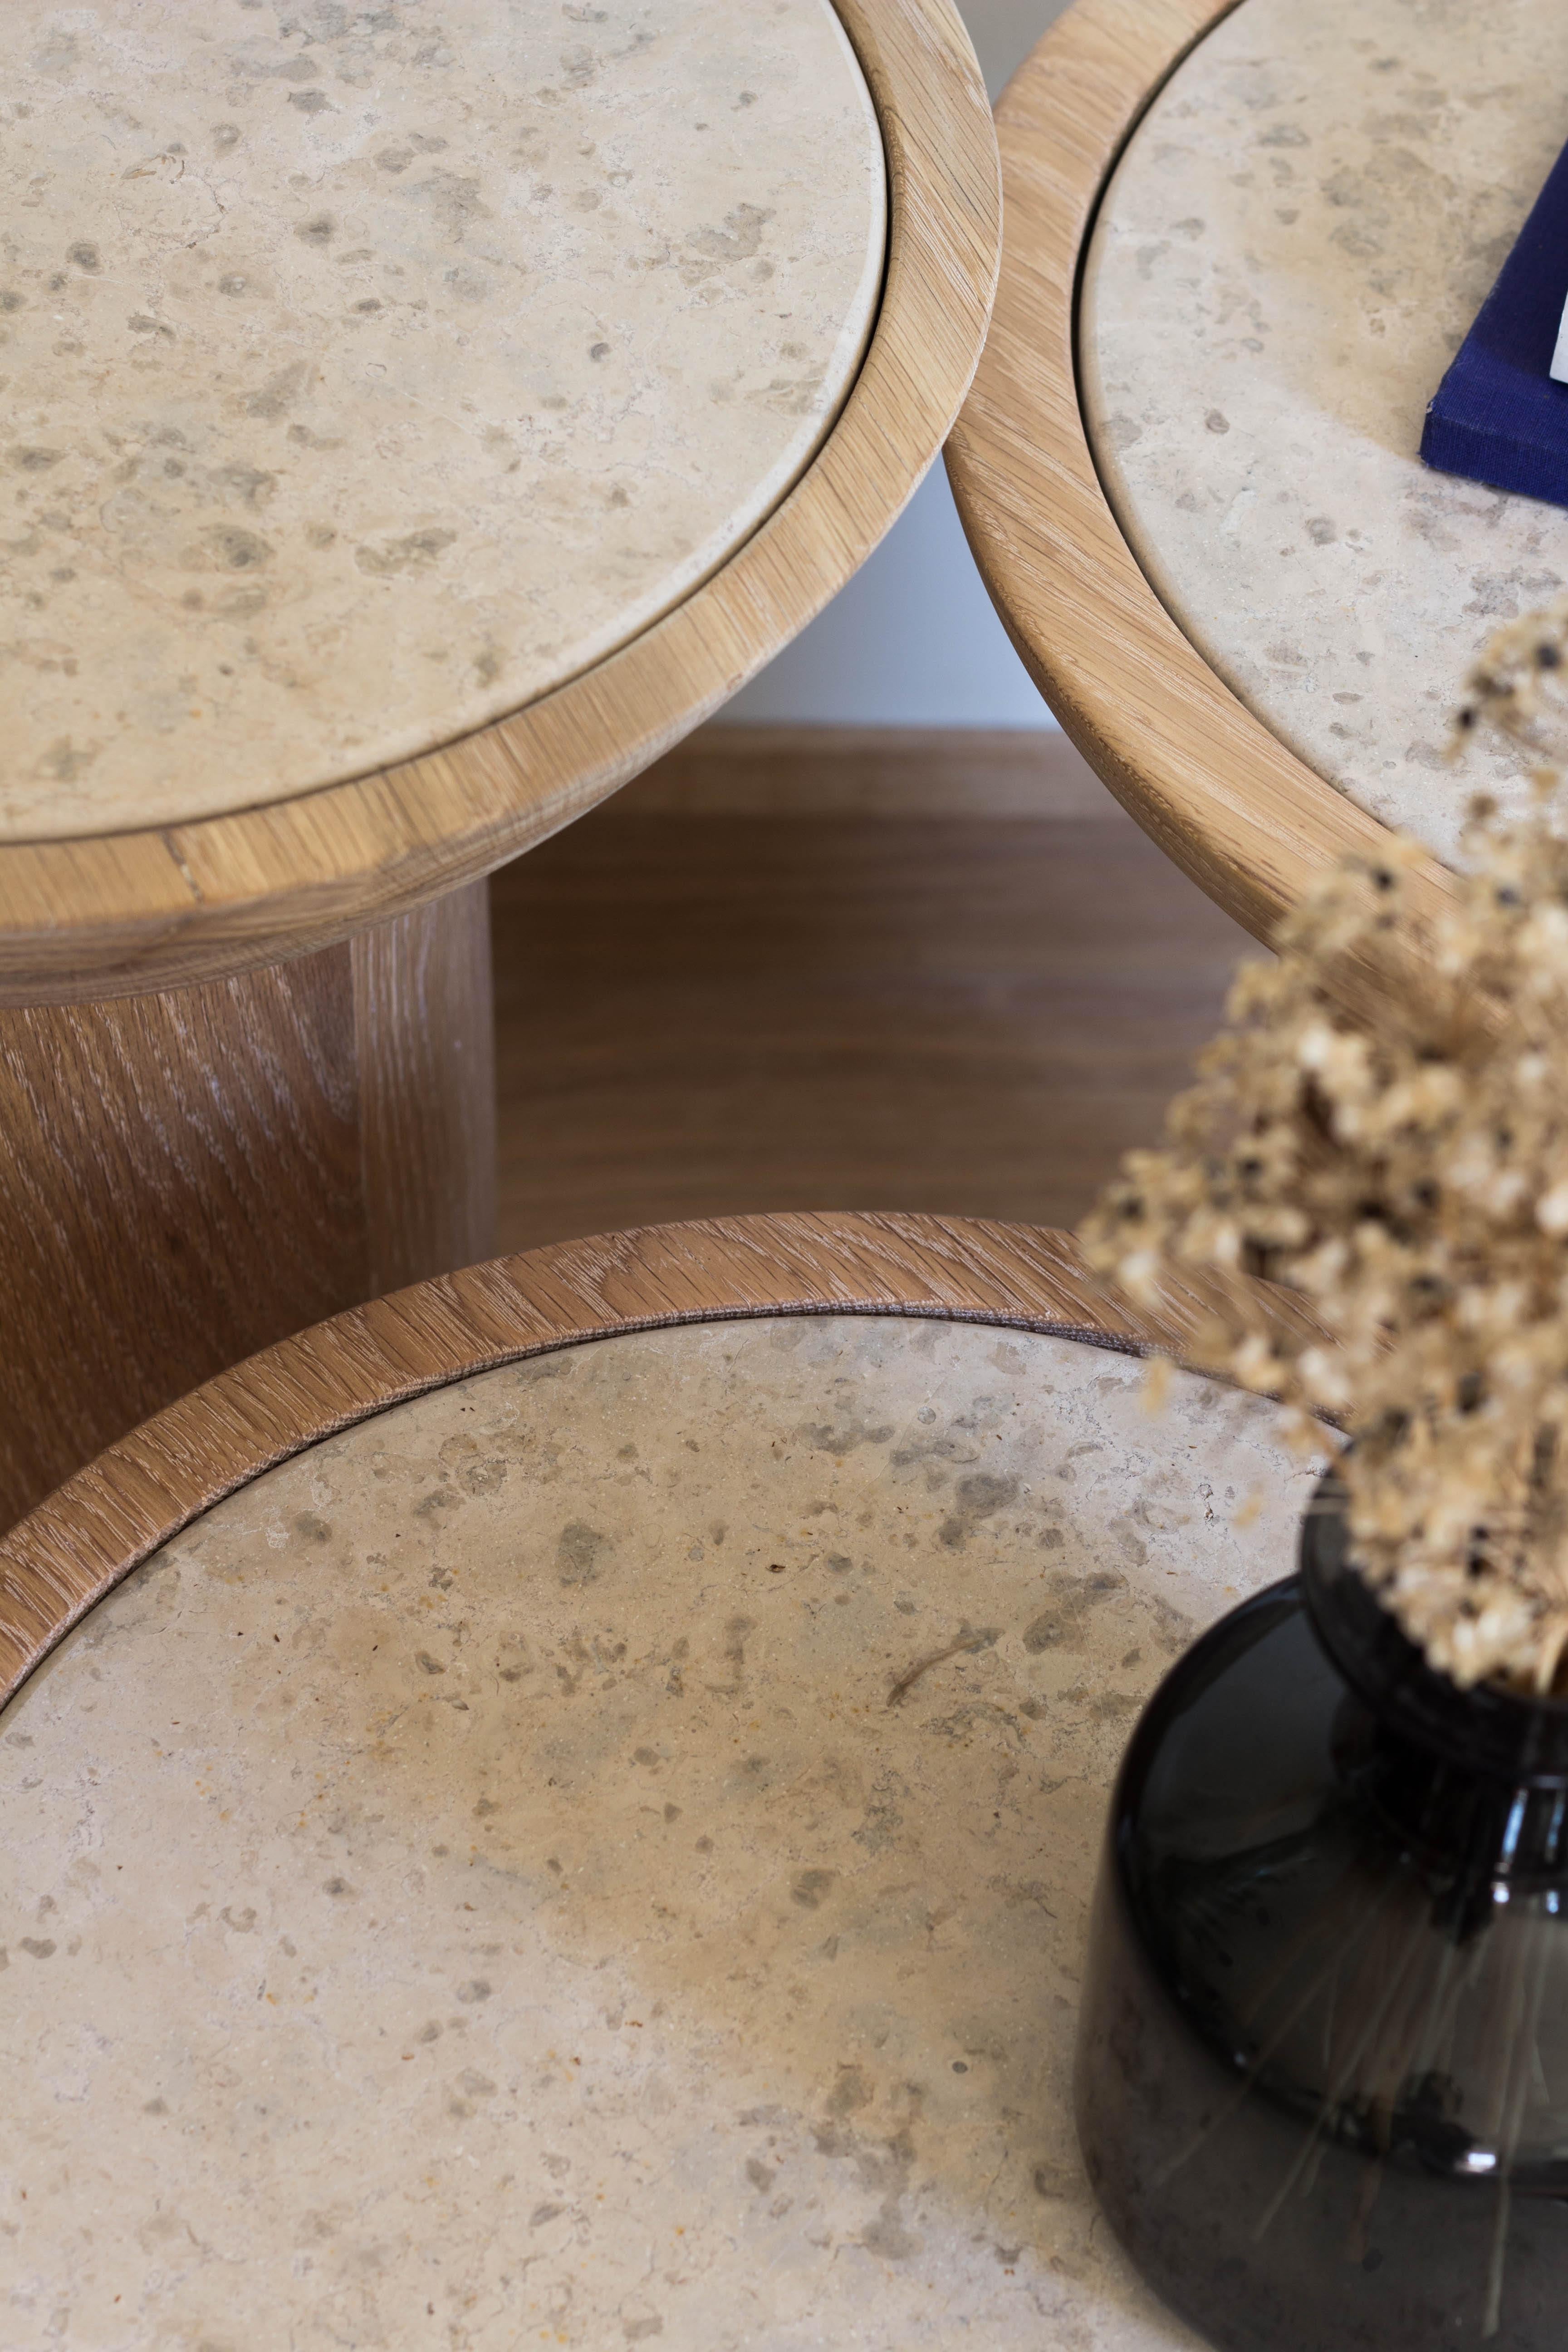 Modern Mezcalito Gordo, Contemporary White Oak Limestone Side Table by SinCa Design For Sale